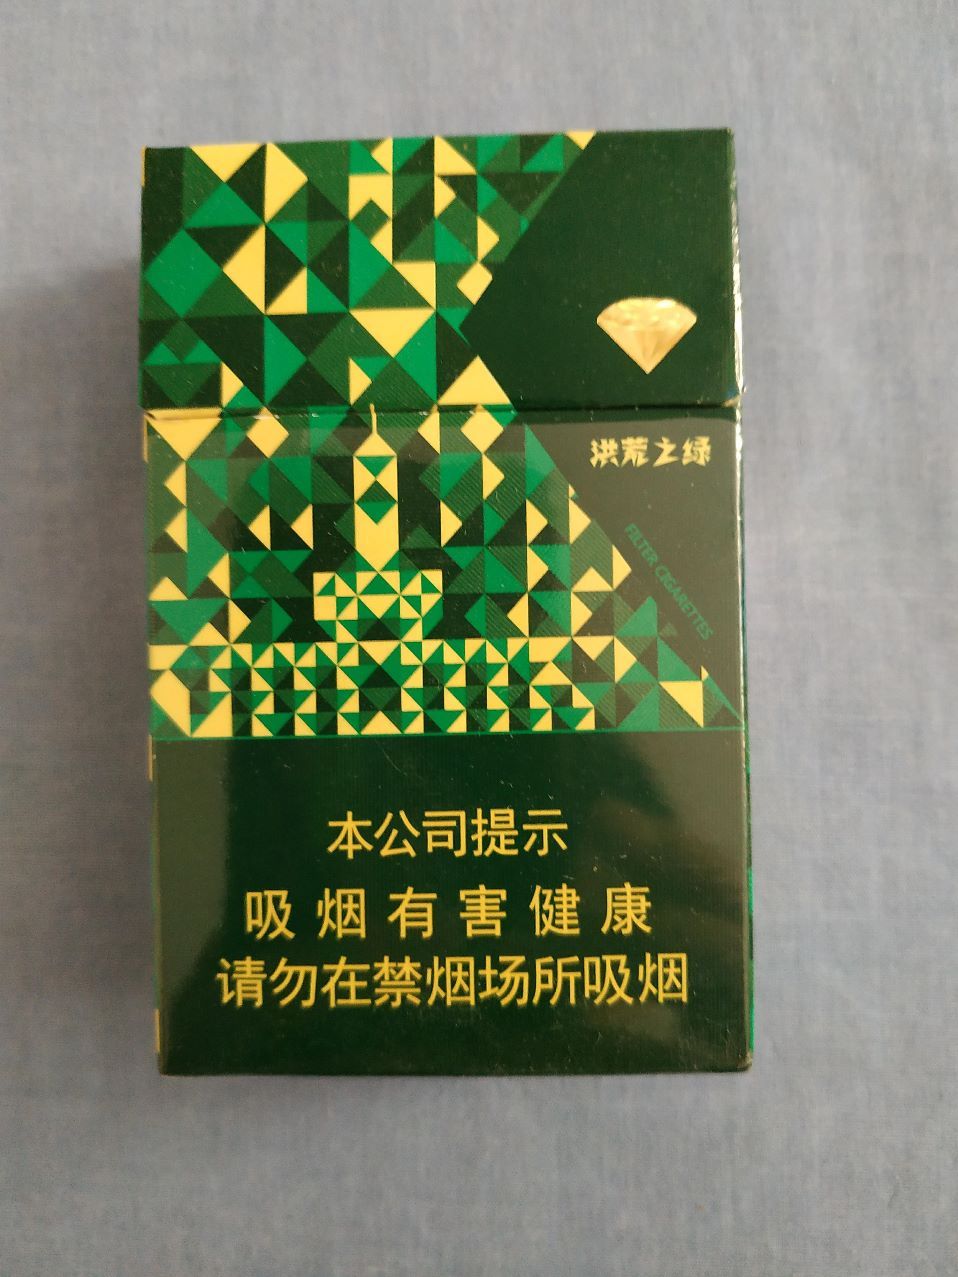 钻石(洪荒之绿,16版尽早戒烟),烟标/烟盒